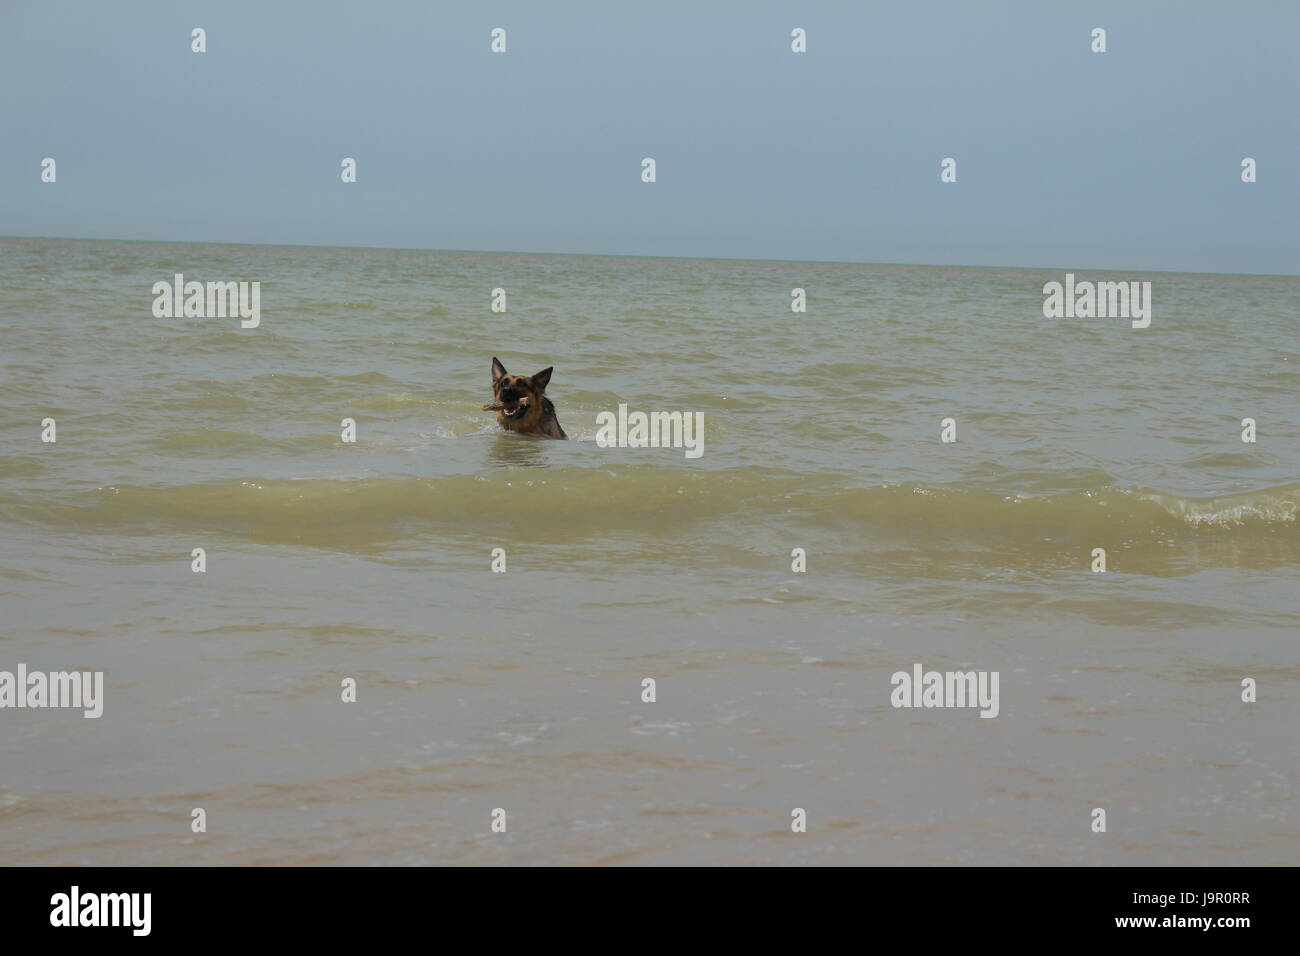 Pastore Tedesco cane indossa un bastone e riproduce in mare Foto Stock